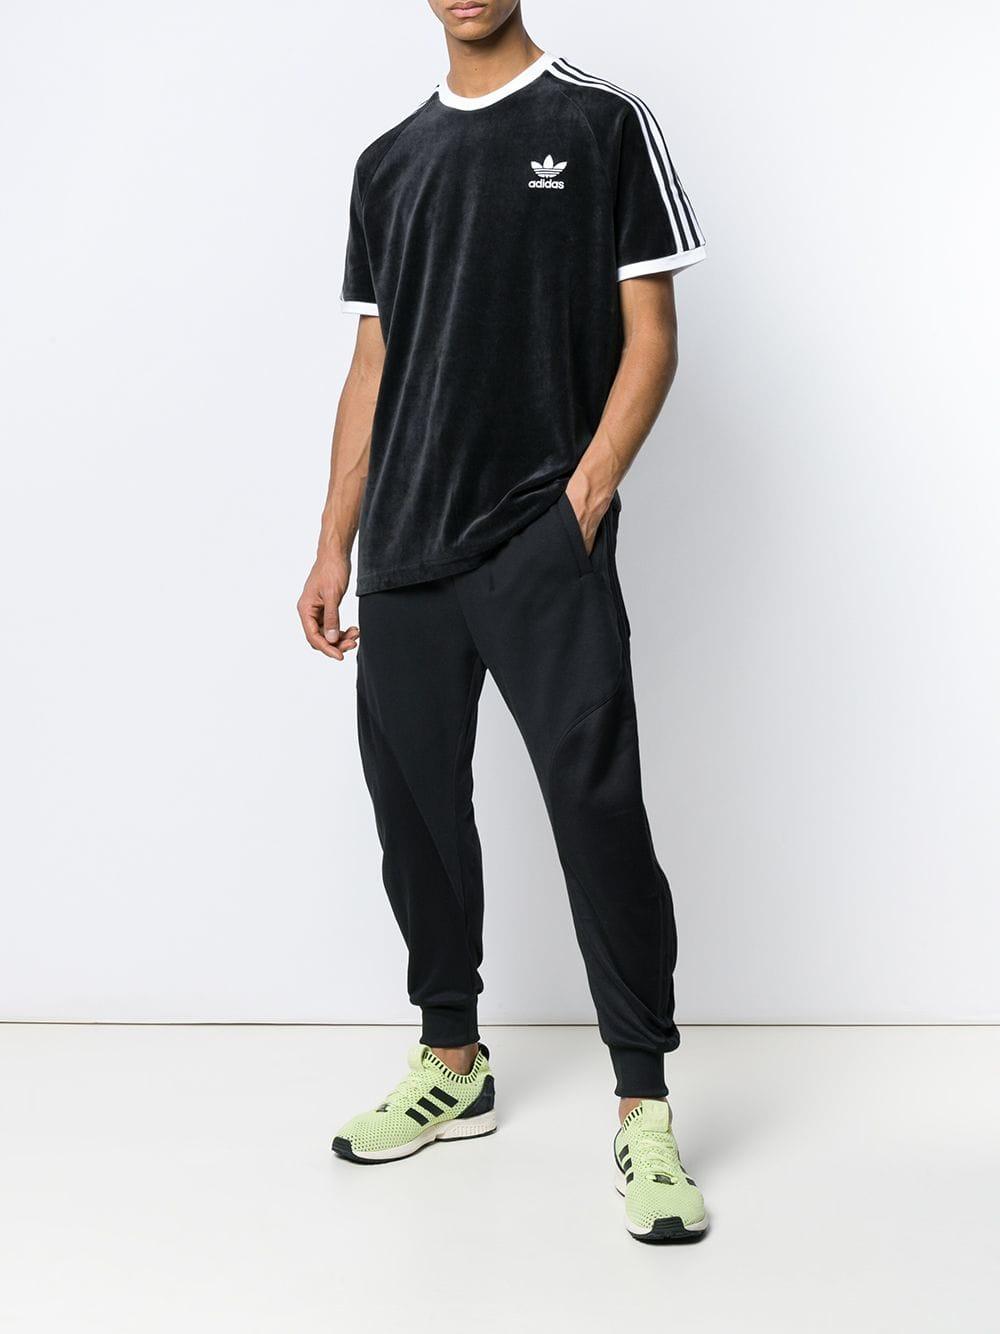 adidas Cozy Velvet T-shirt in Black for Men - Lyst